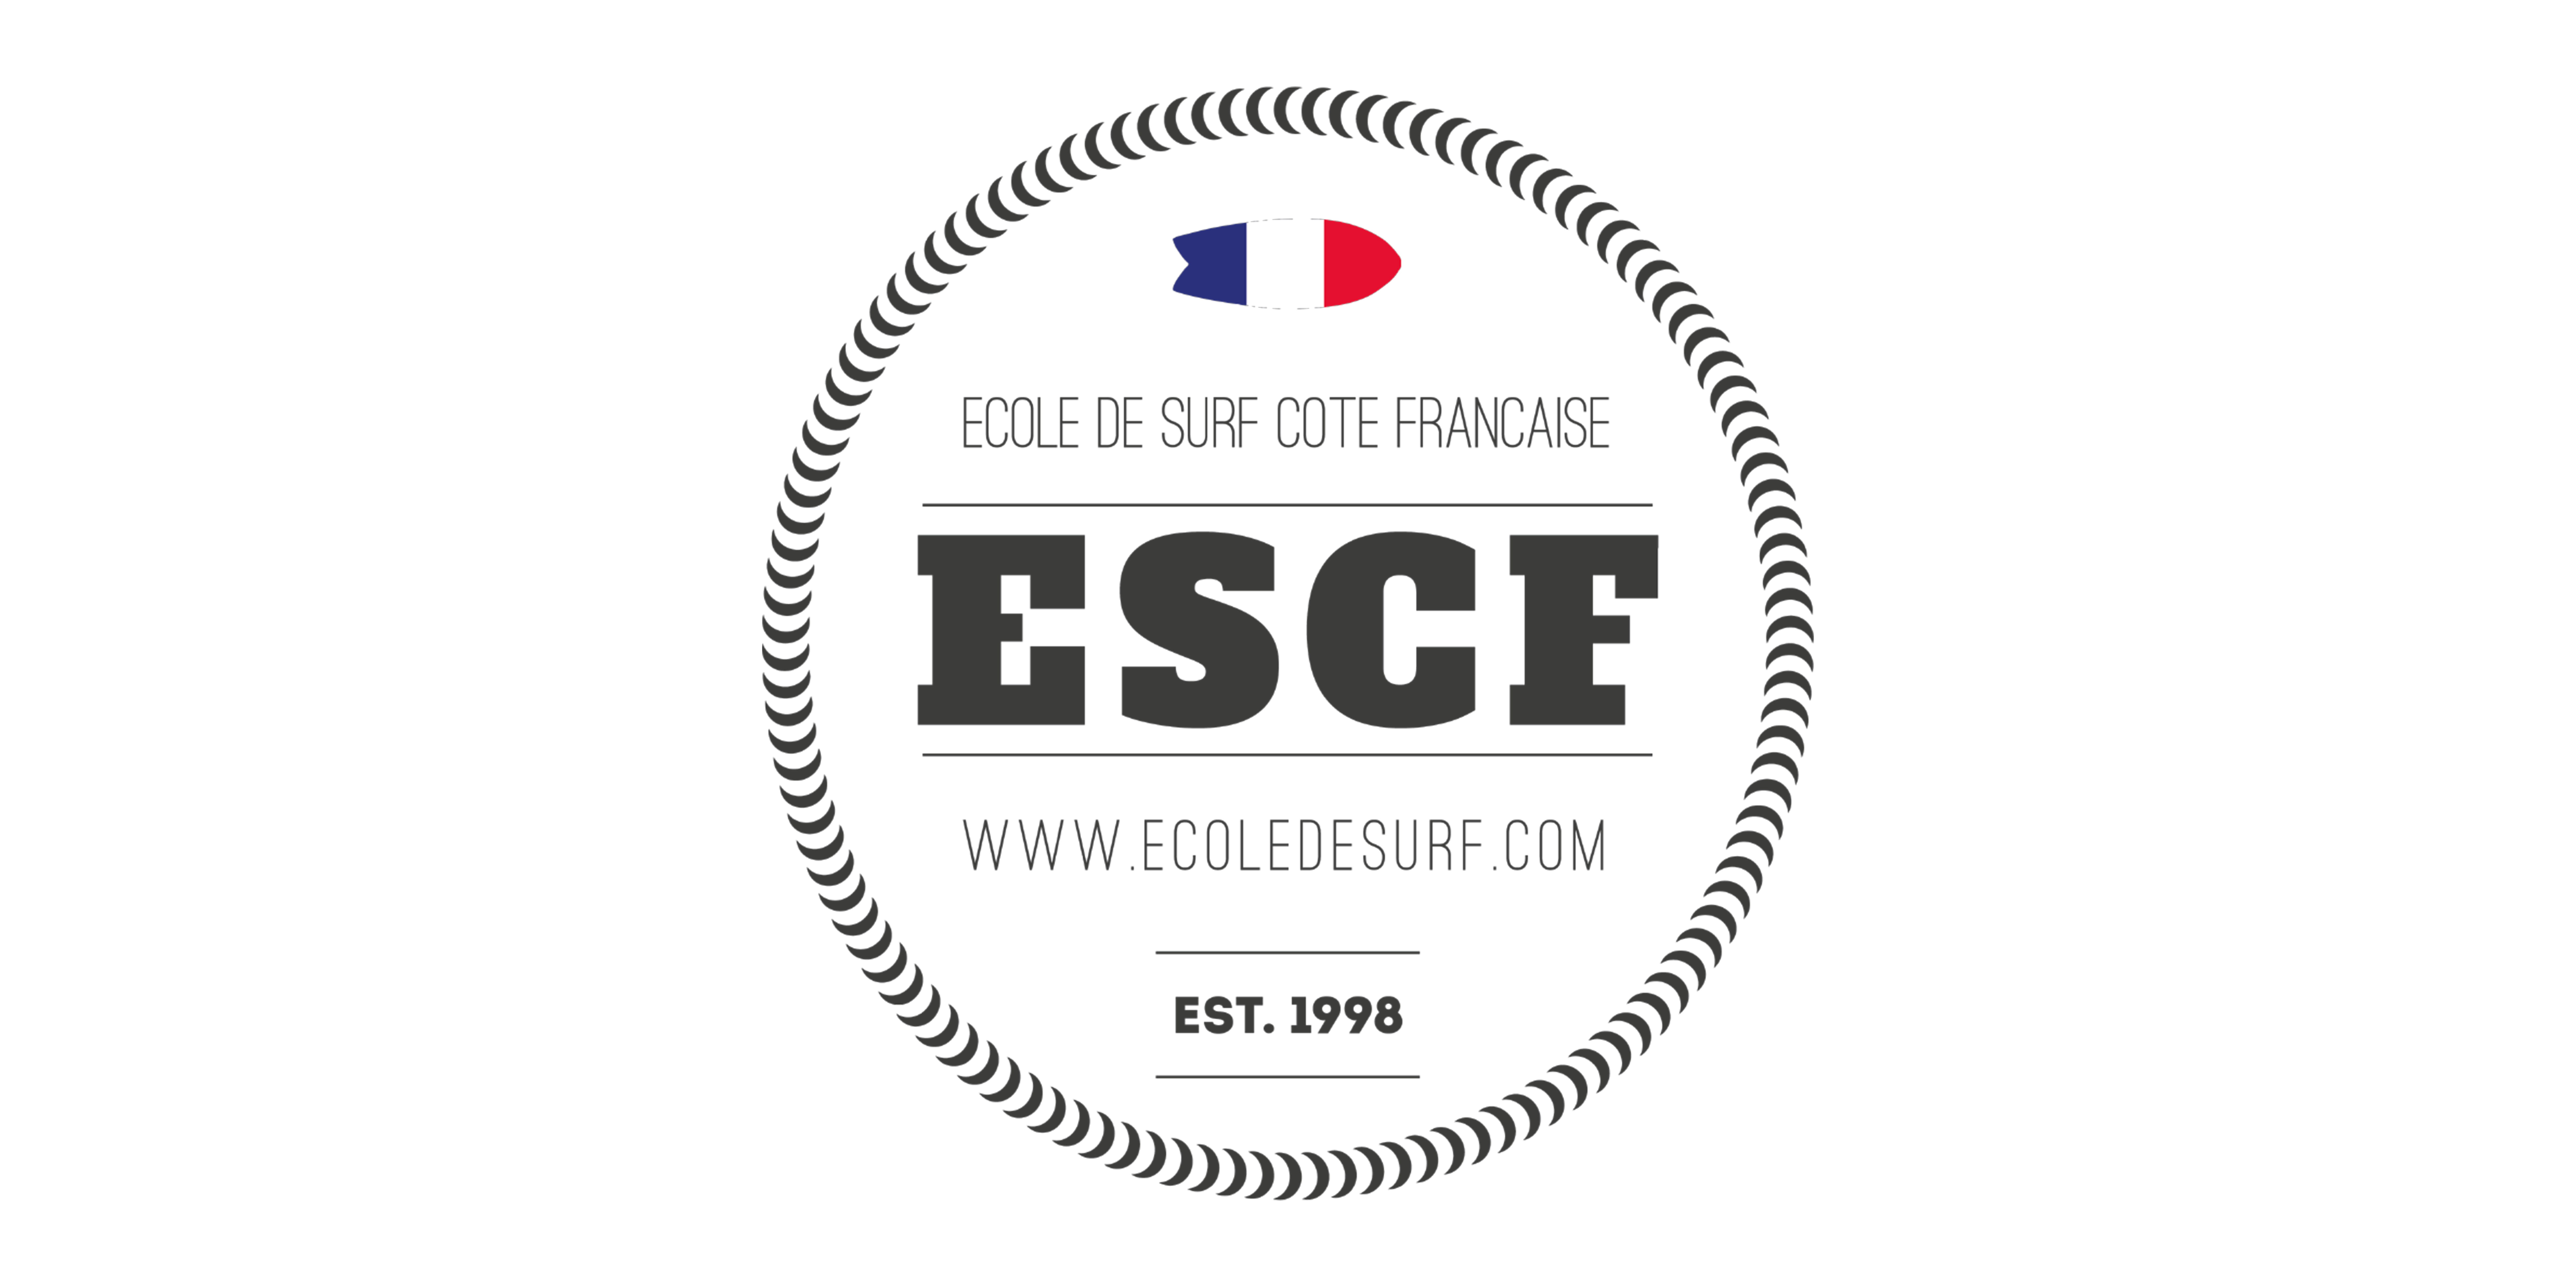 ESCF-520x260-1.png